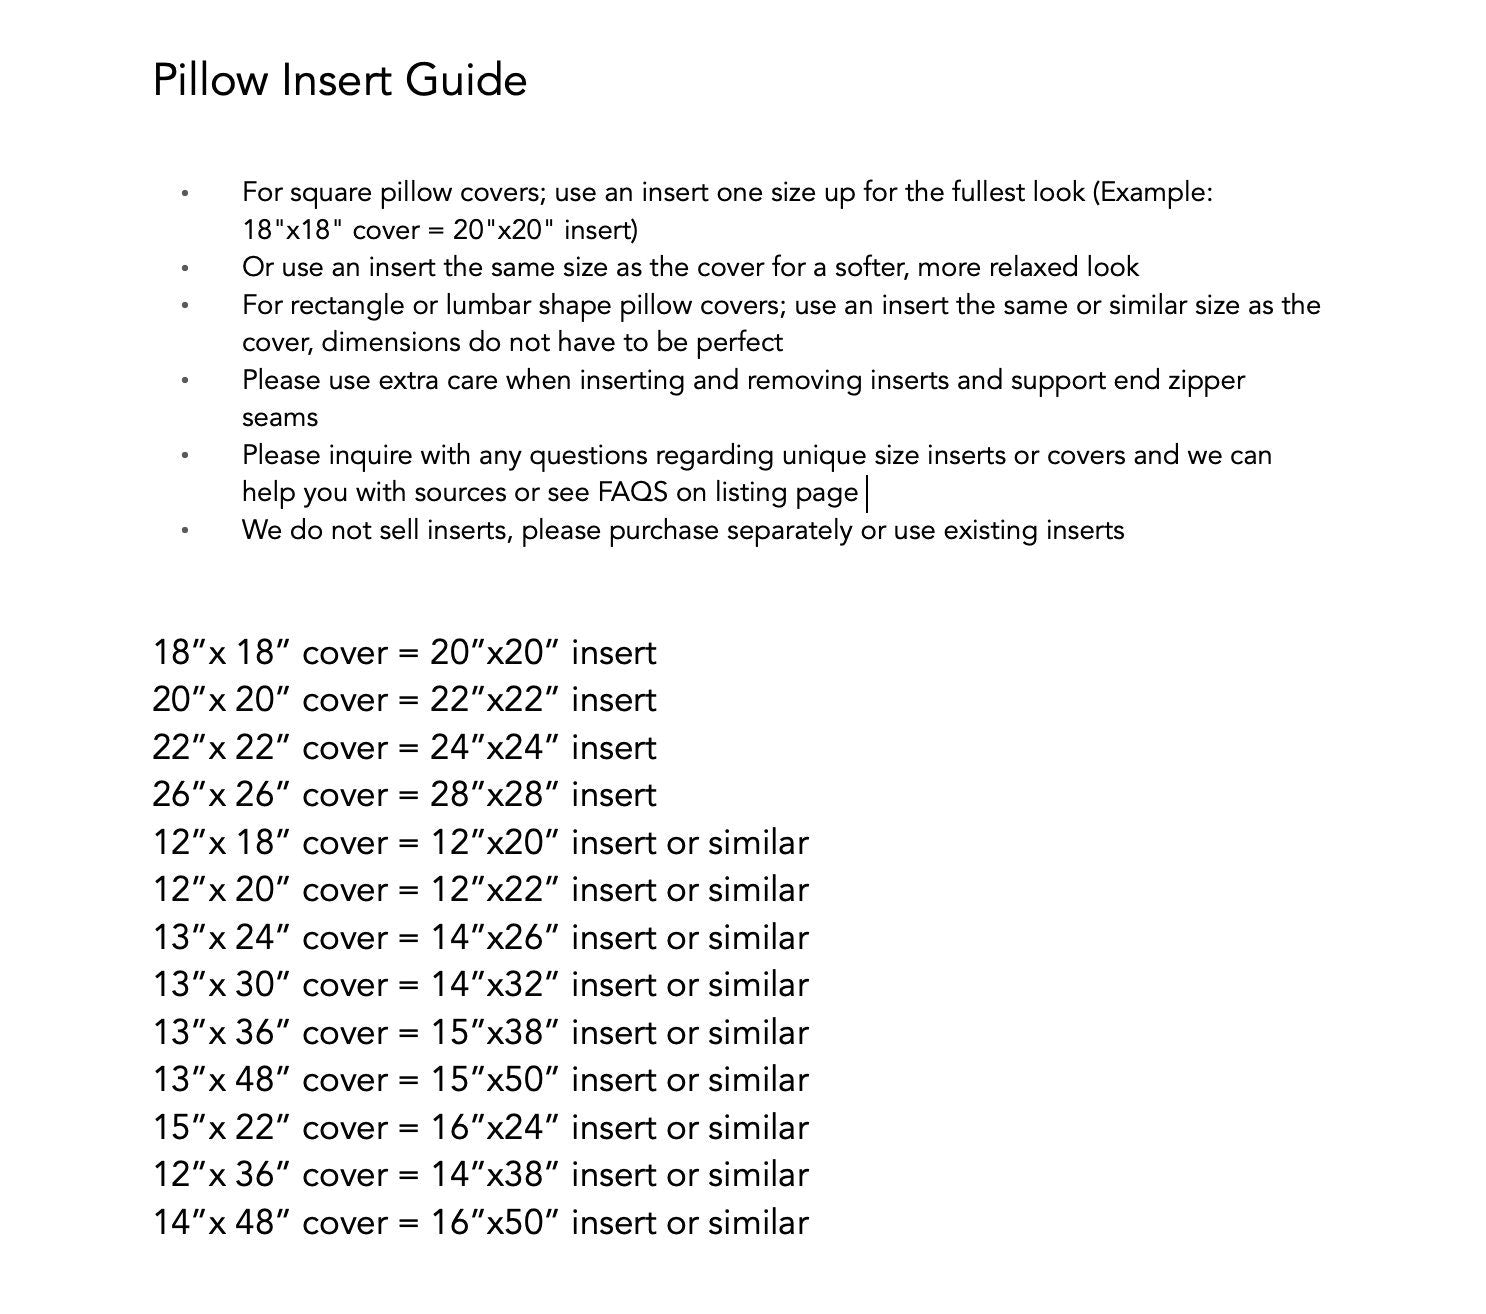 PLUSH Velvet Pillow Cover - Plum